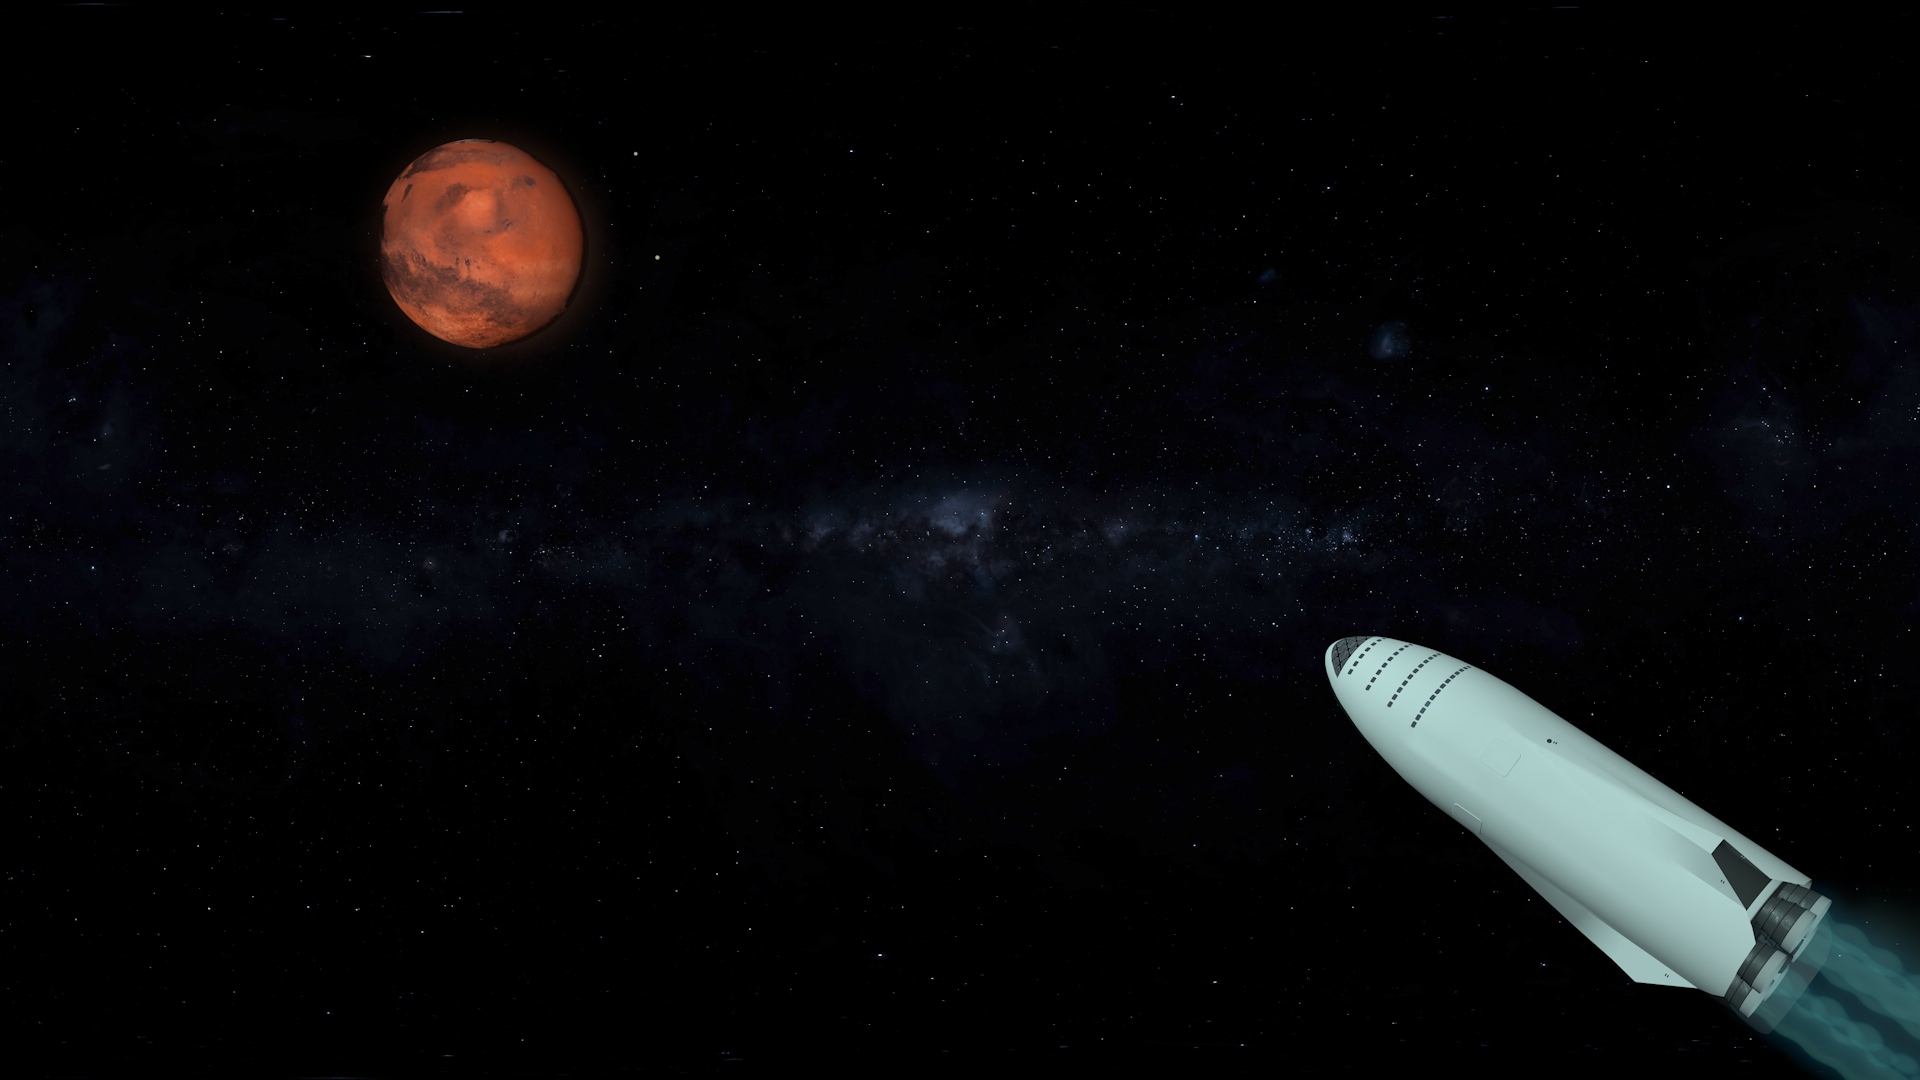 SpaceX Big Falcon ракета в Cinema 4d maxwell render зображення